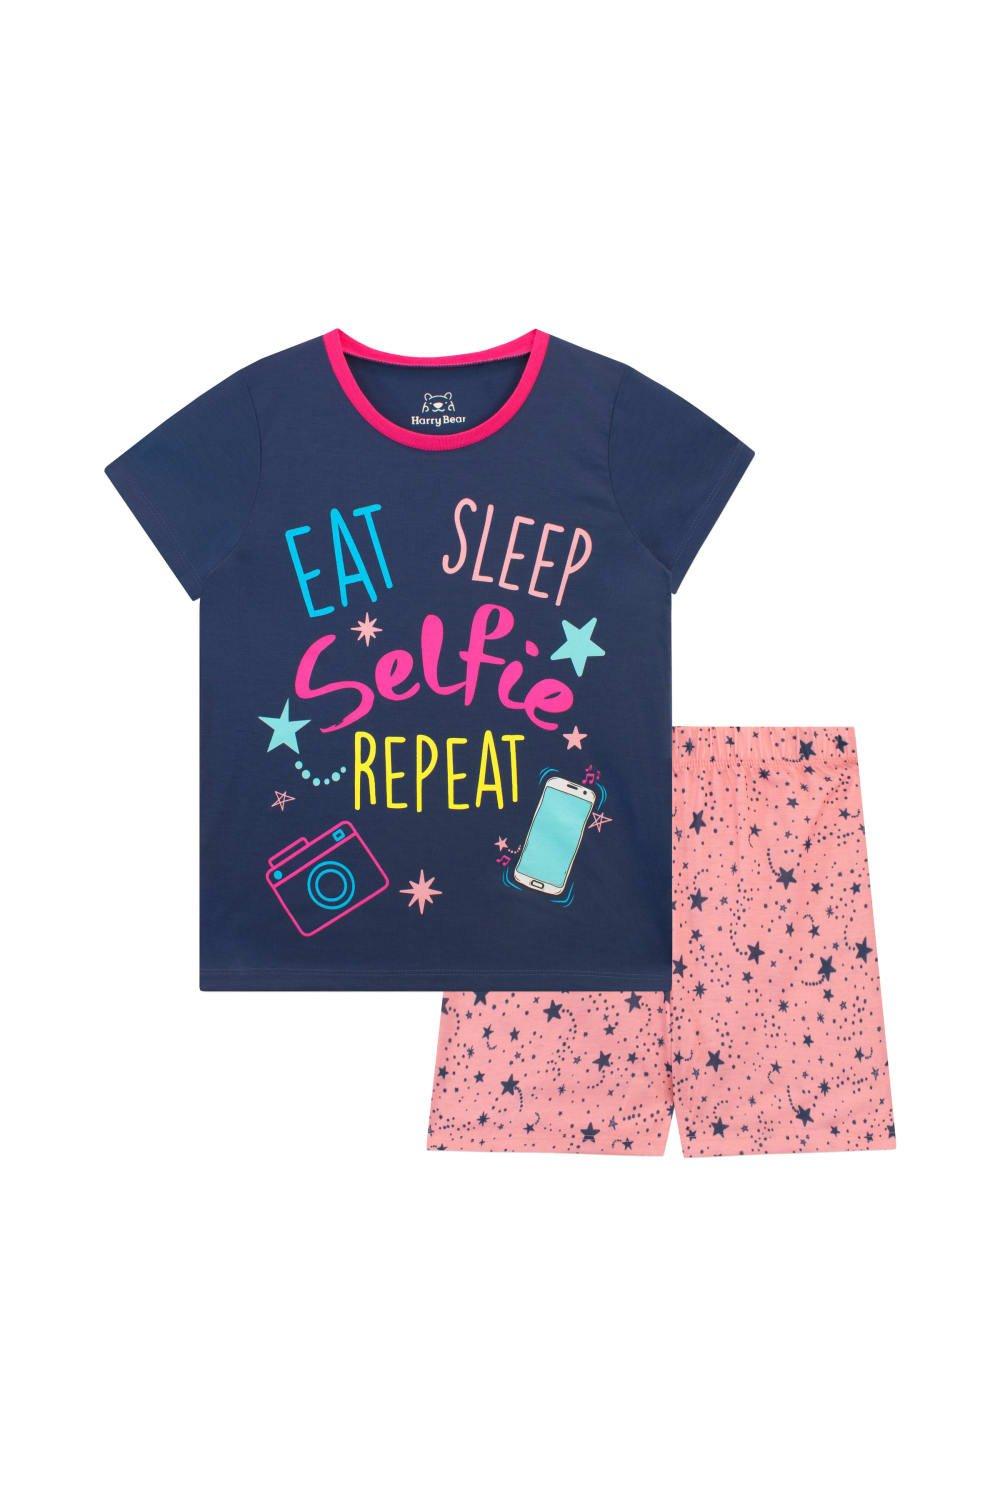 Eat Sleep Selfie Repeat Print Pyjamas